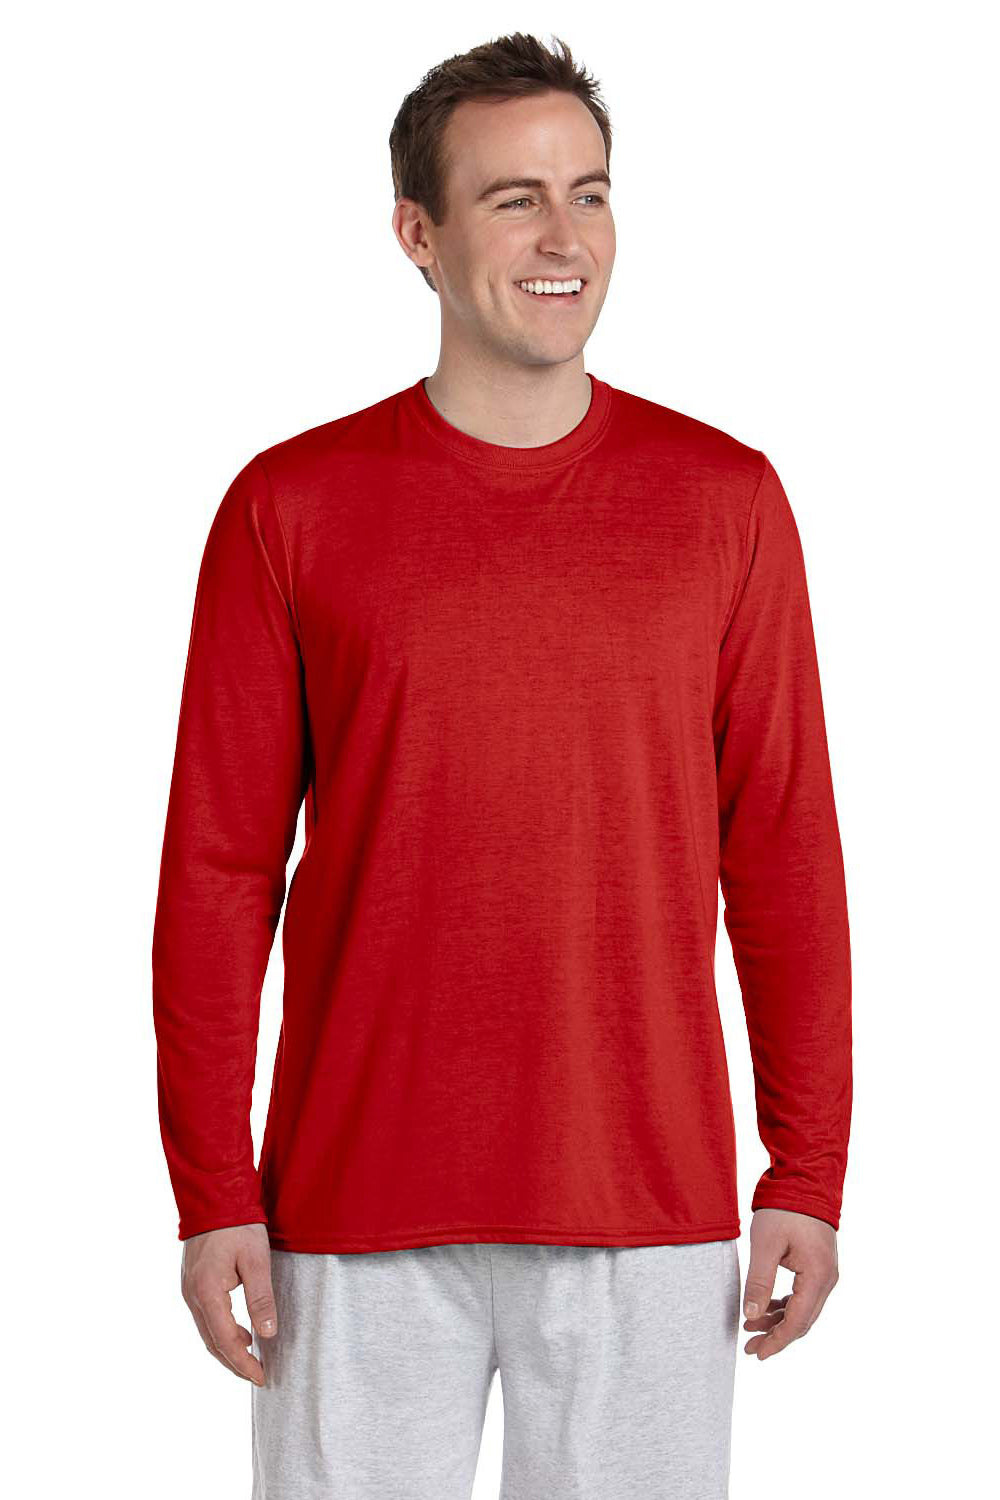 Gildan G424 Mens Performance Jersey Moisture Wicking Long Sleeve Crewneck T-Shirt Red Front